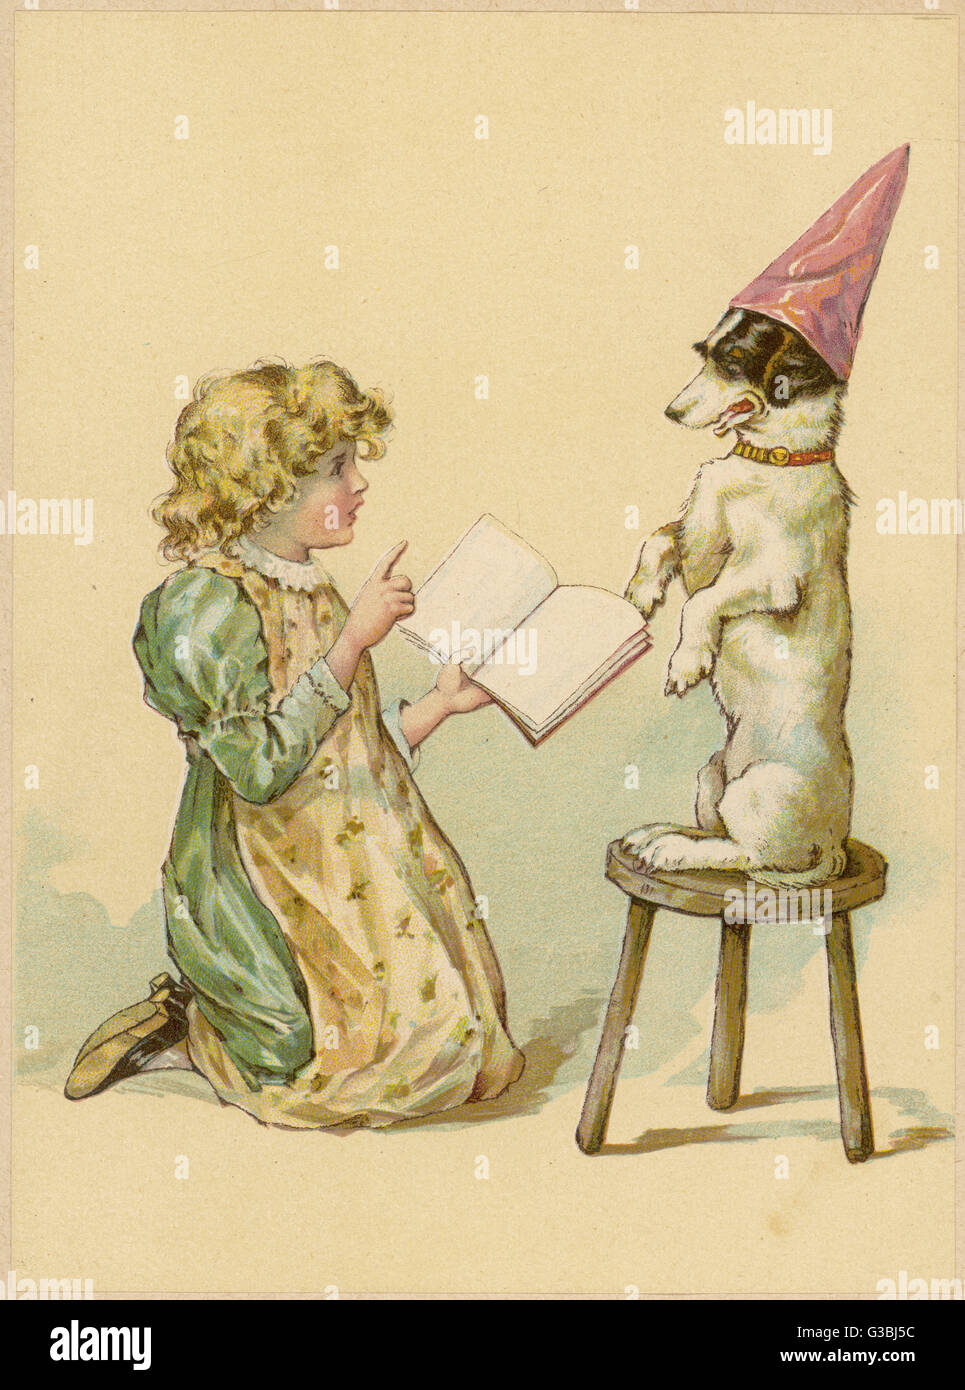 Una joven intenta enseñar a su perro nuevos trucos. Fecha: circa 1890 Foto de stock